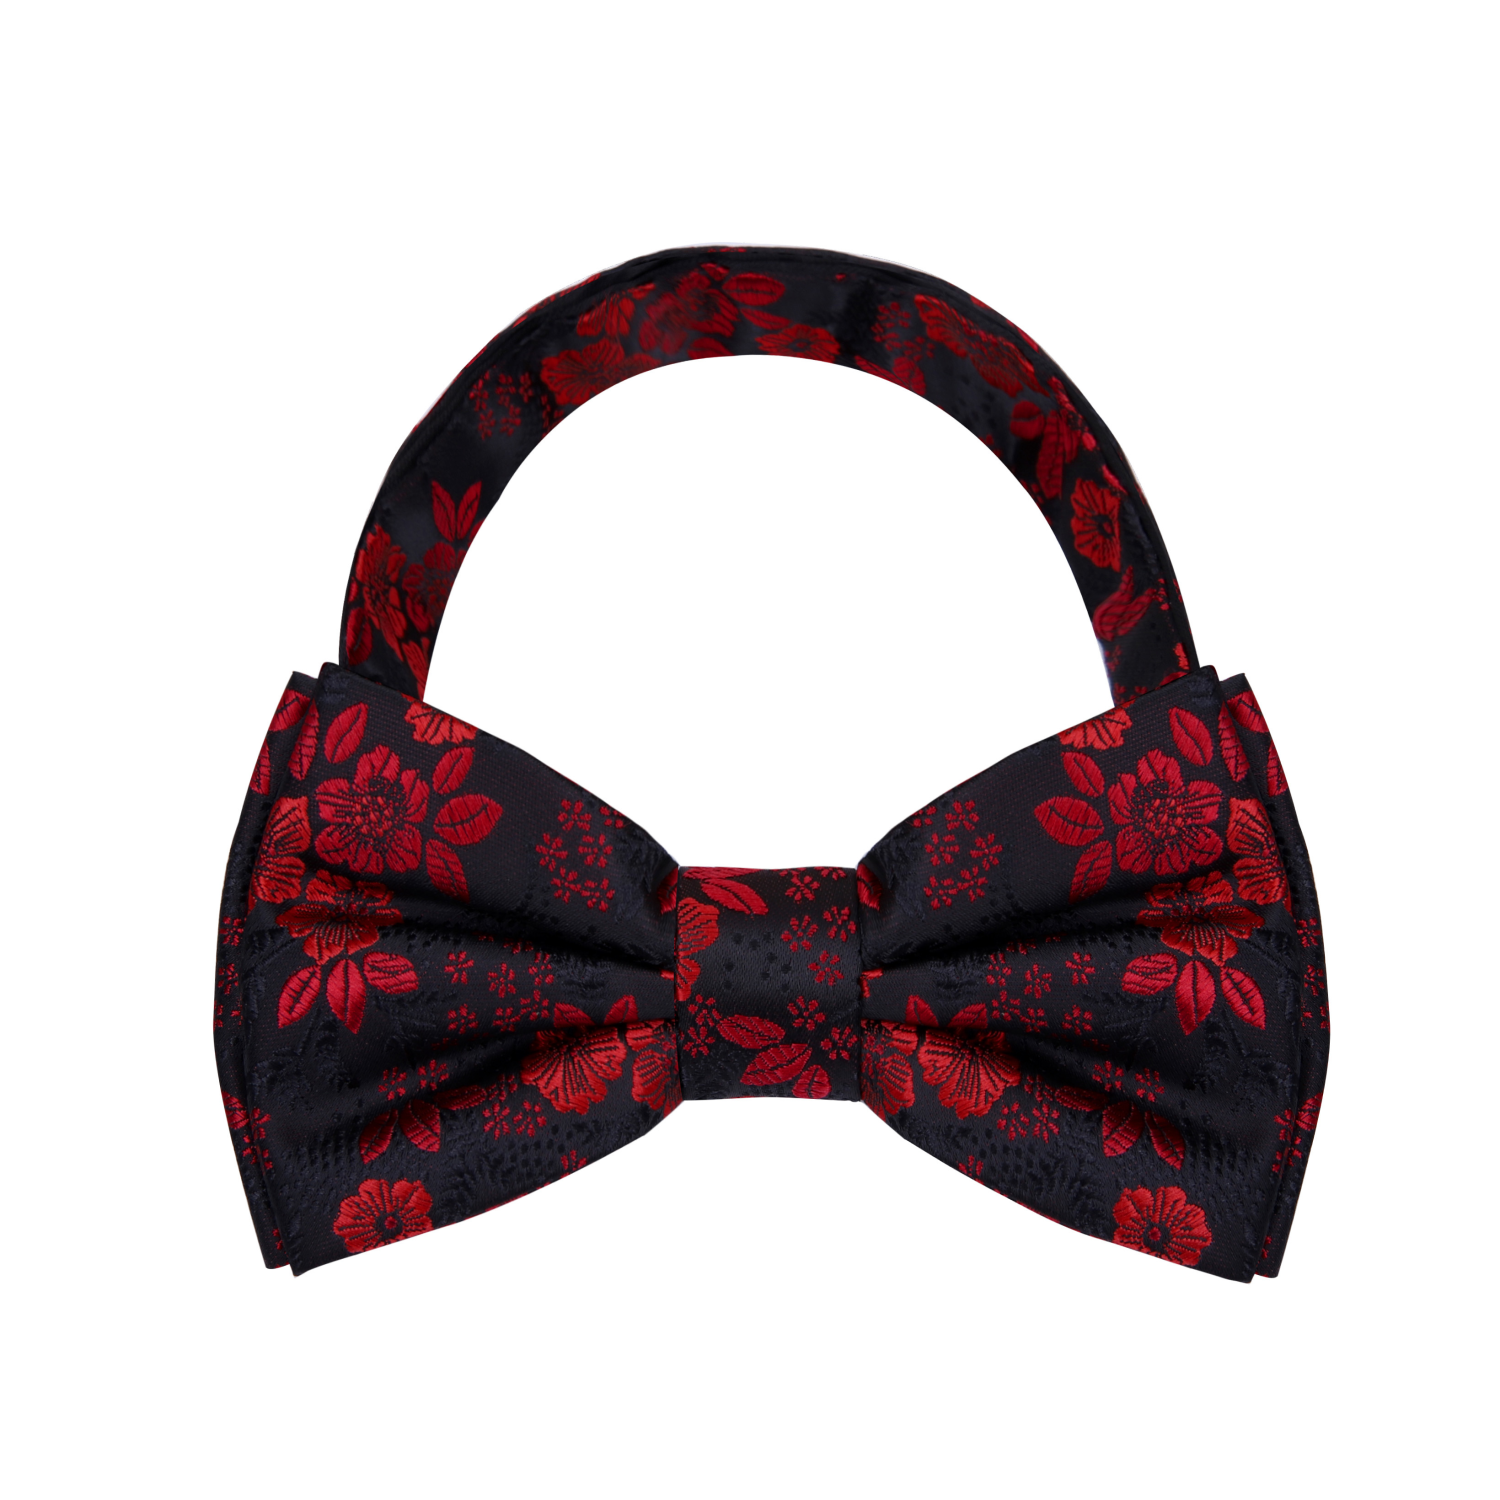 Black Red Original Floral Bow Tie Pre Tied